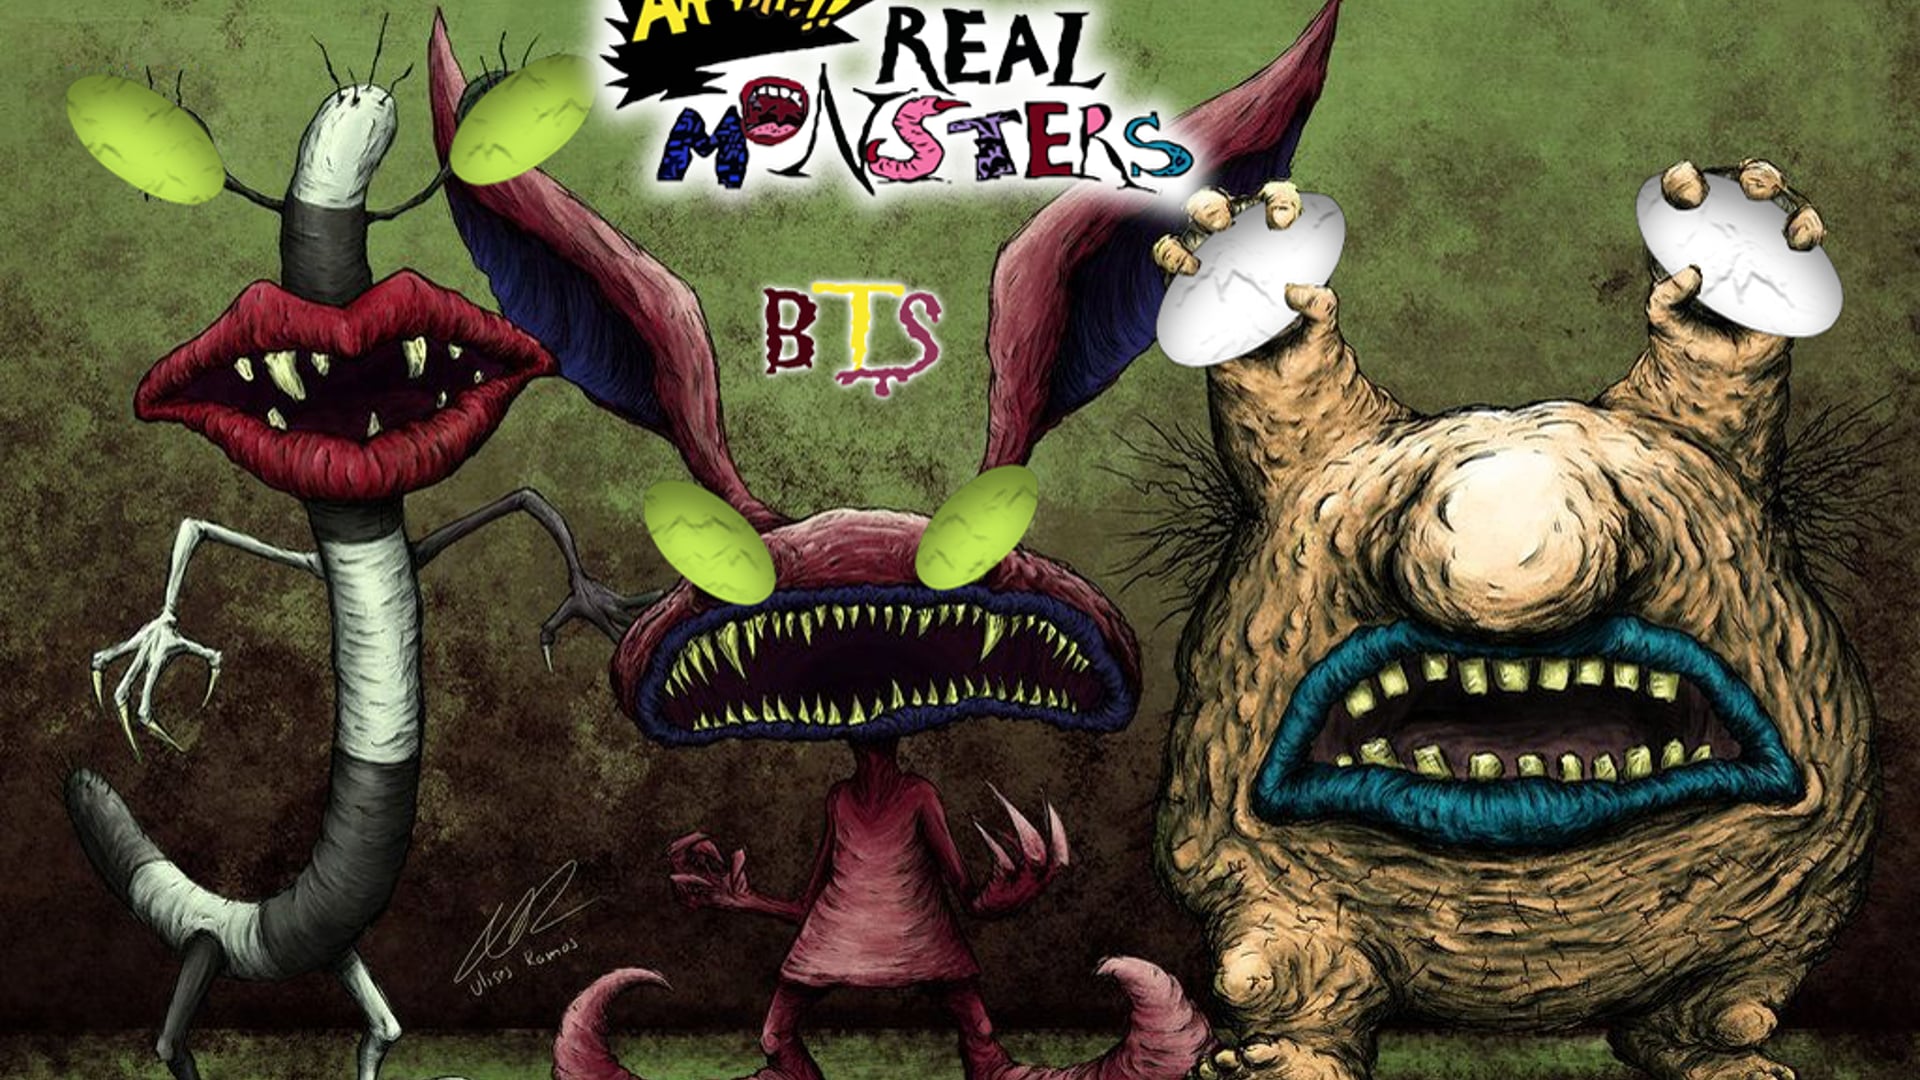 Ahhh Real Monsters BTS